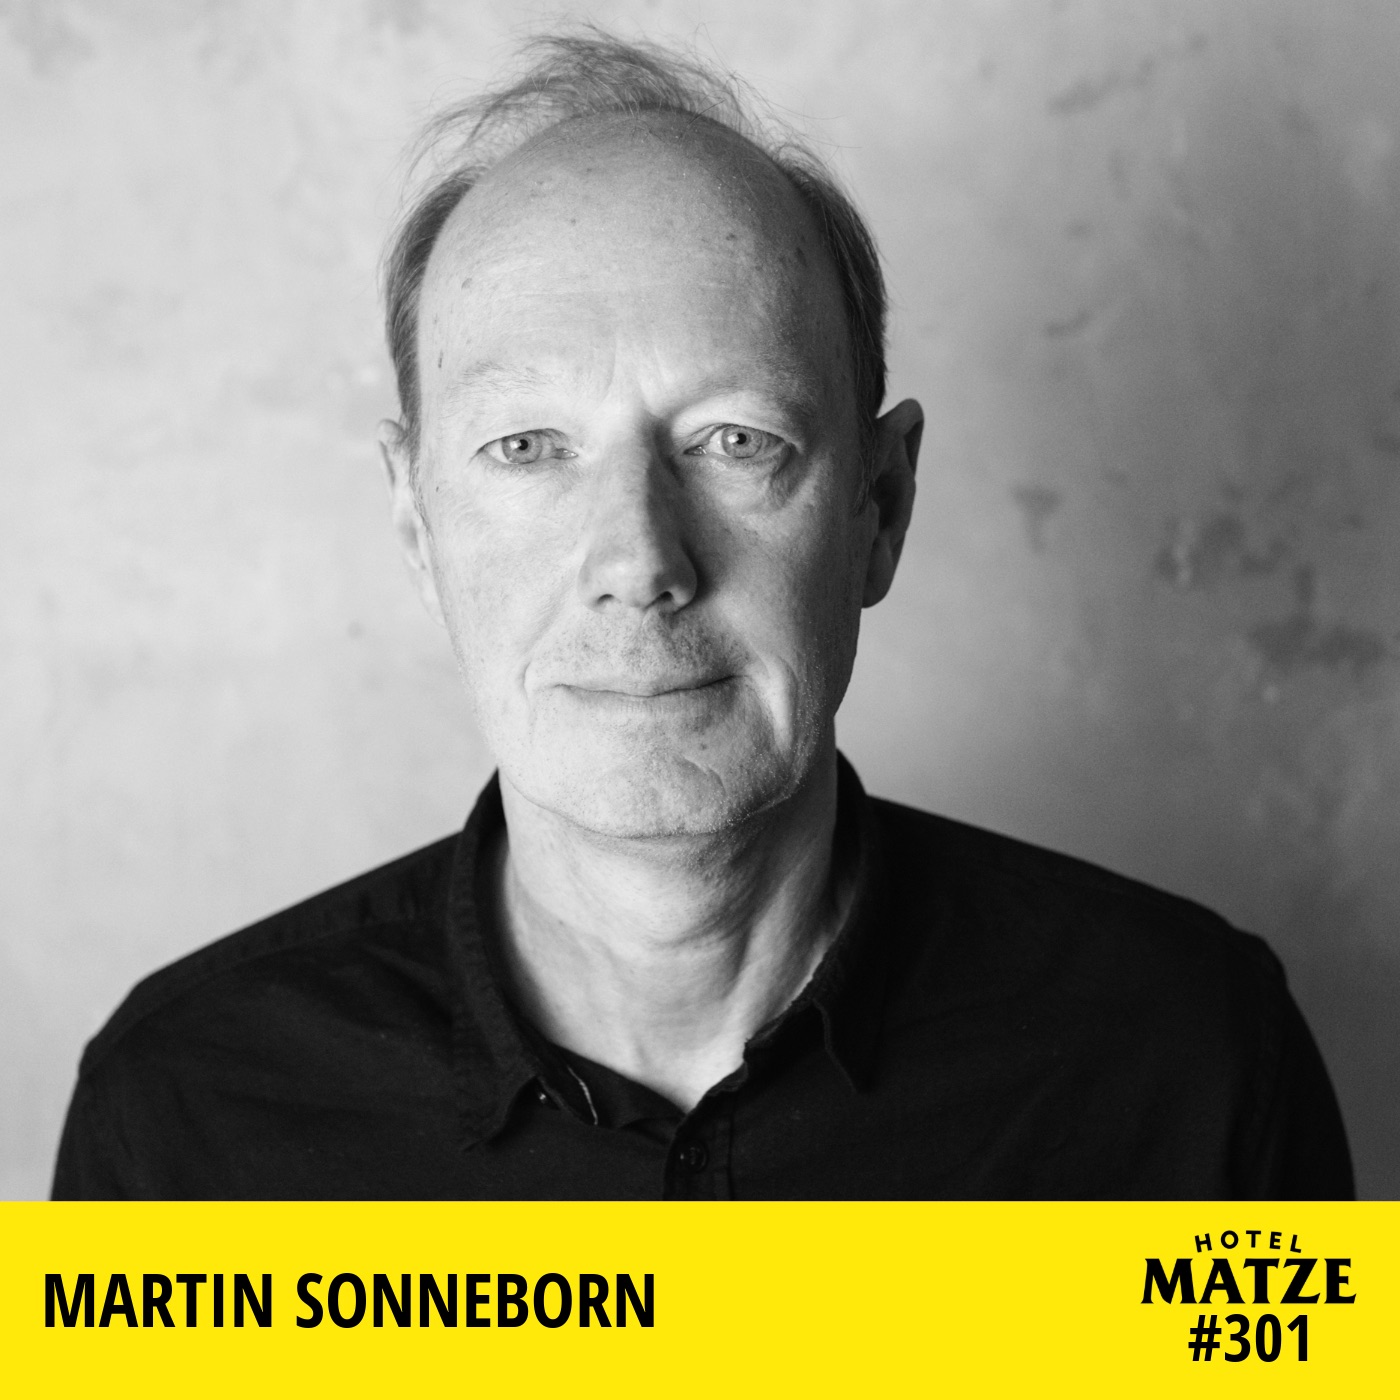 Martin Sonneborn - Bist du Politiker oder Satiriker?